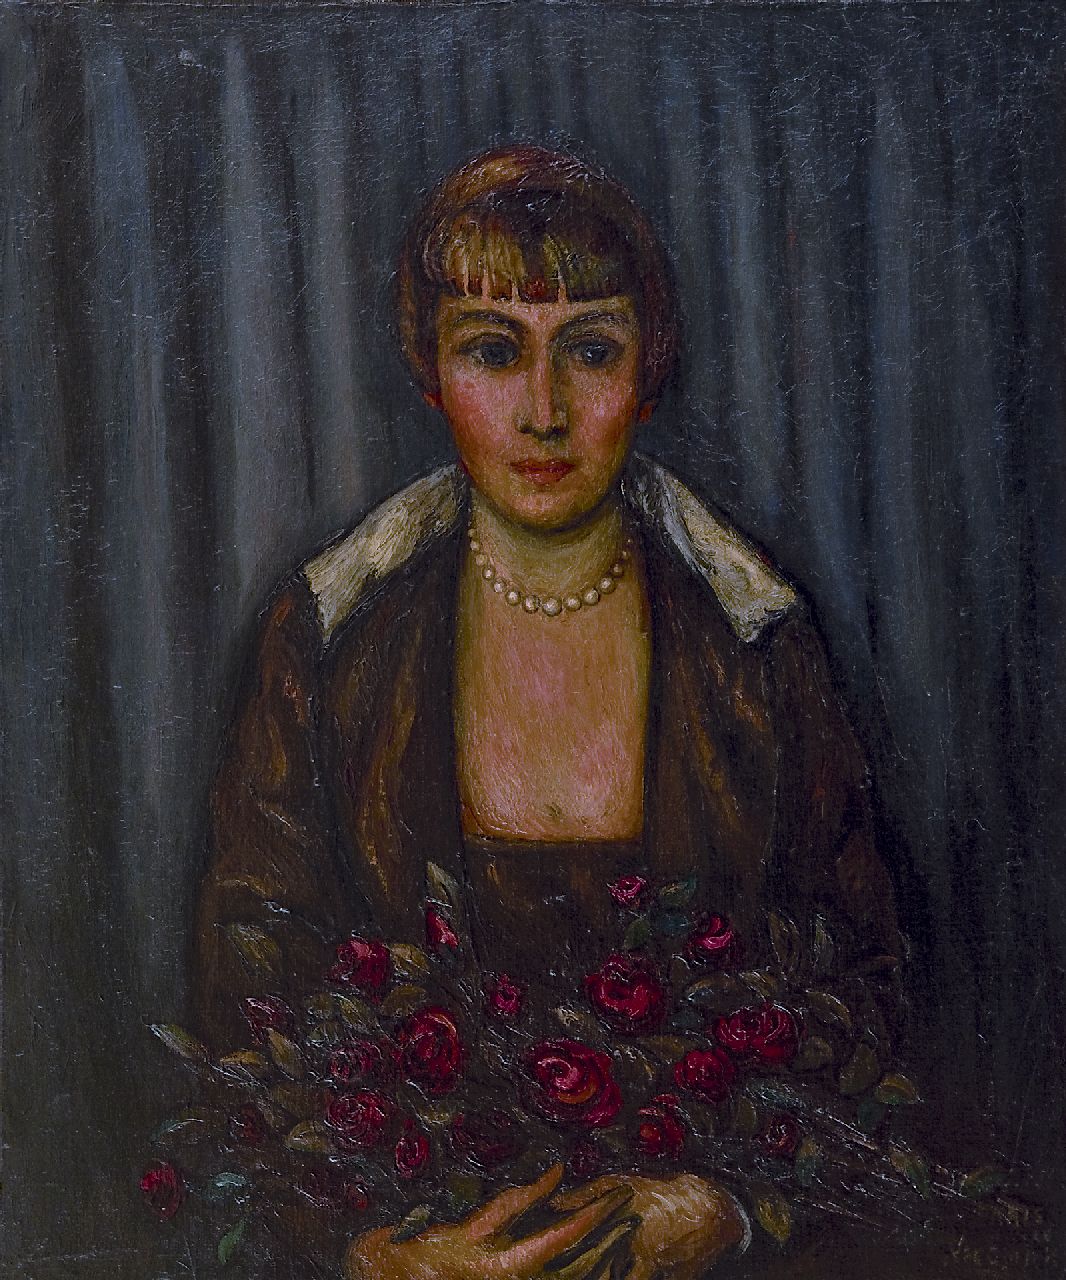 Wiegman M.J.M.  | Mattheus Johannes Marie 'Matthieu' Wiegman | Schilderijen te koop aangeboden | Vrouw met boeket rozen, olieverf op doek 65,2 x 54,2 cm, gesigneerd rechtsonder en gedateerd 'Paris '20'